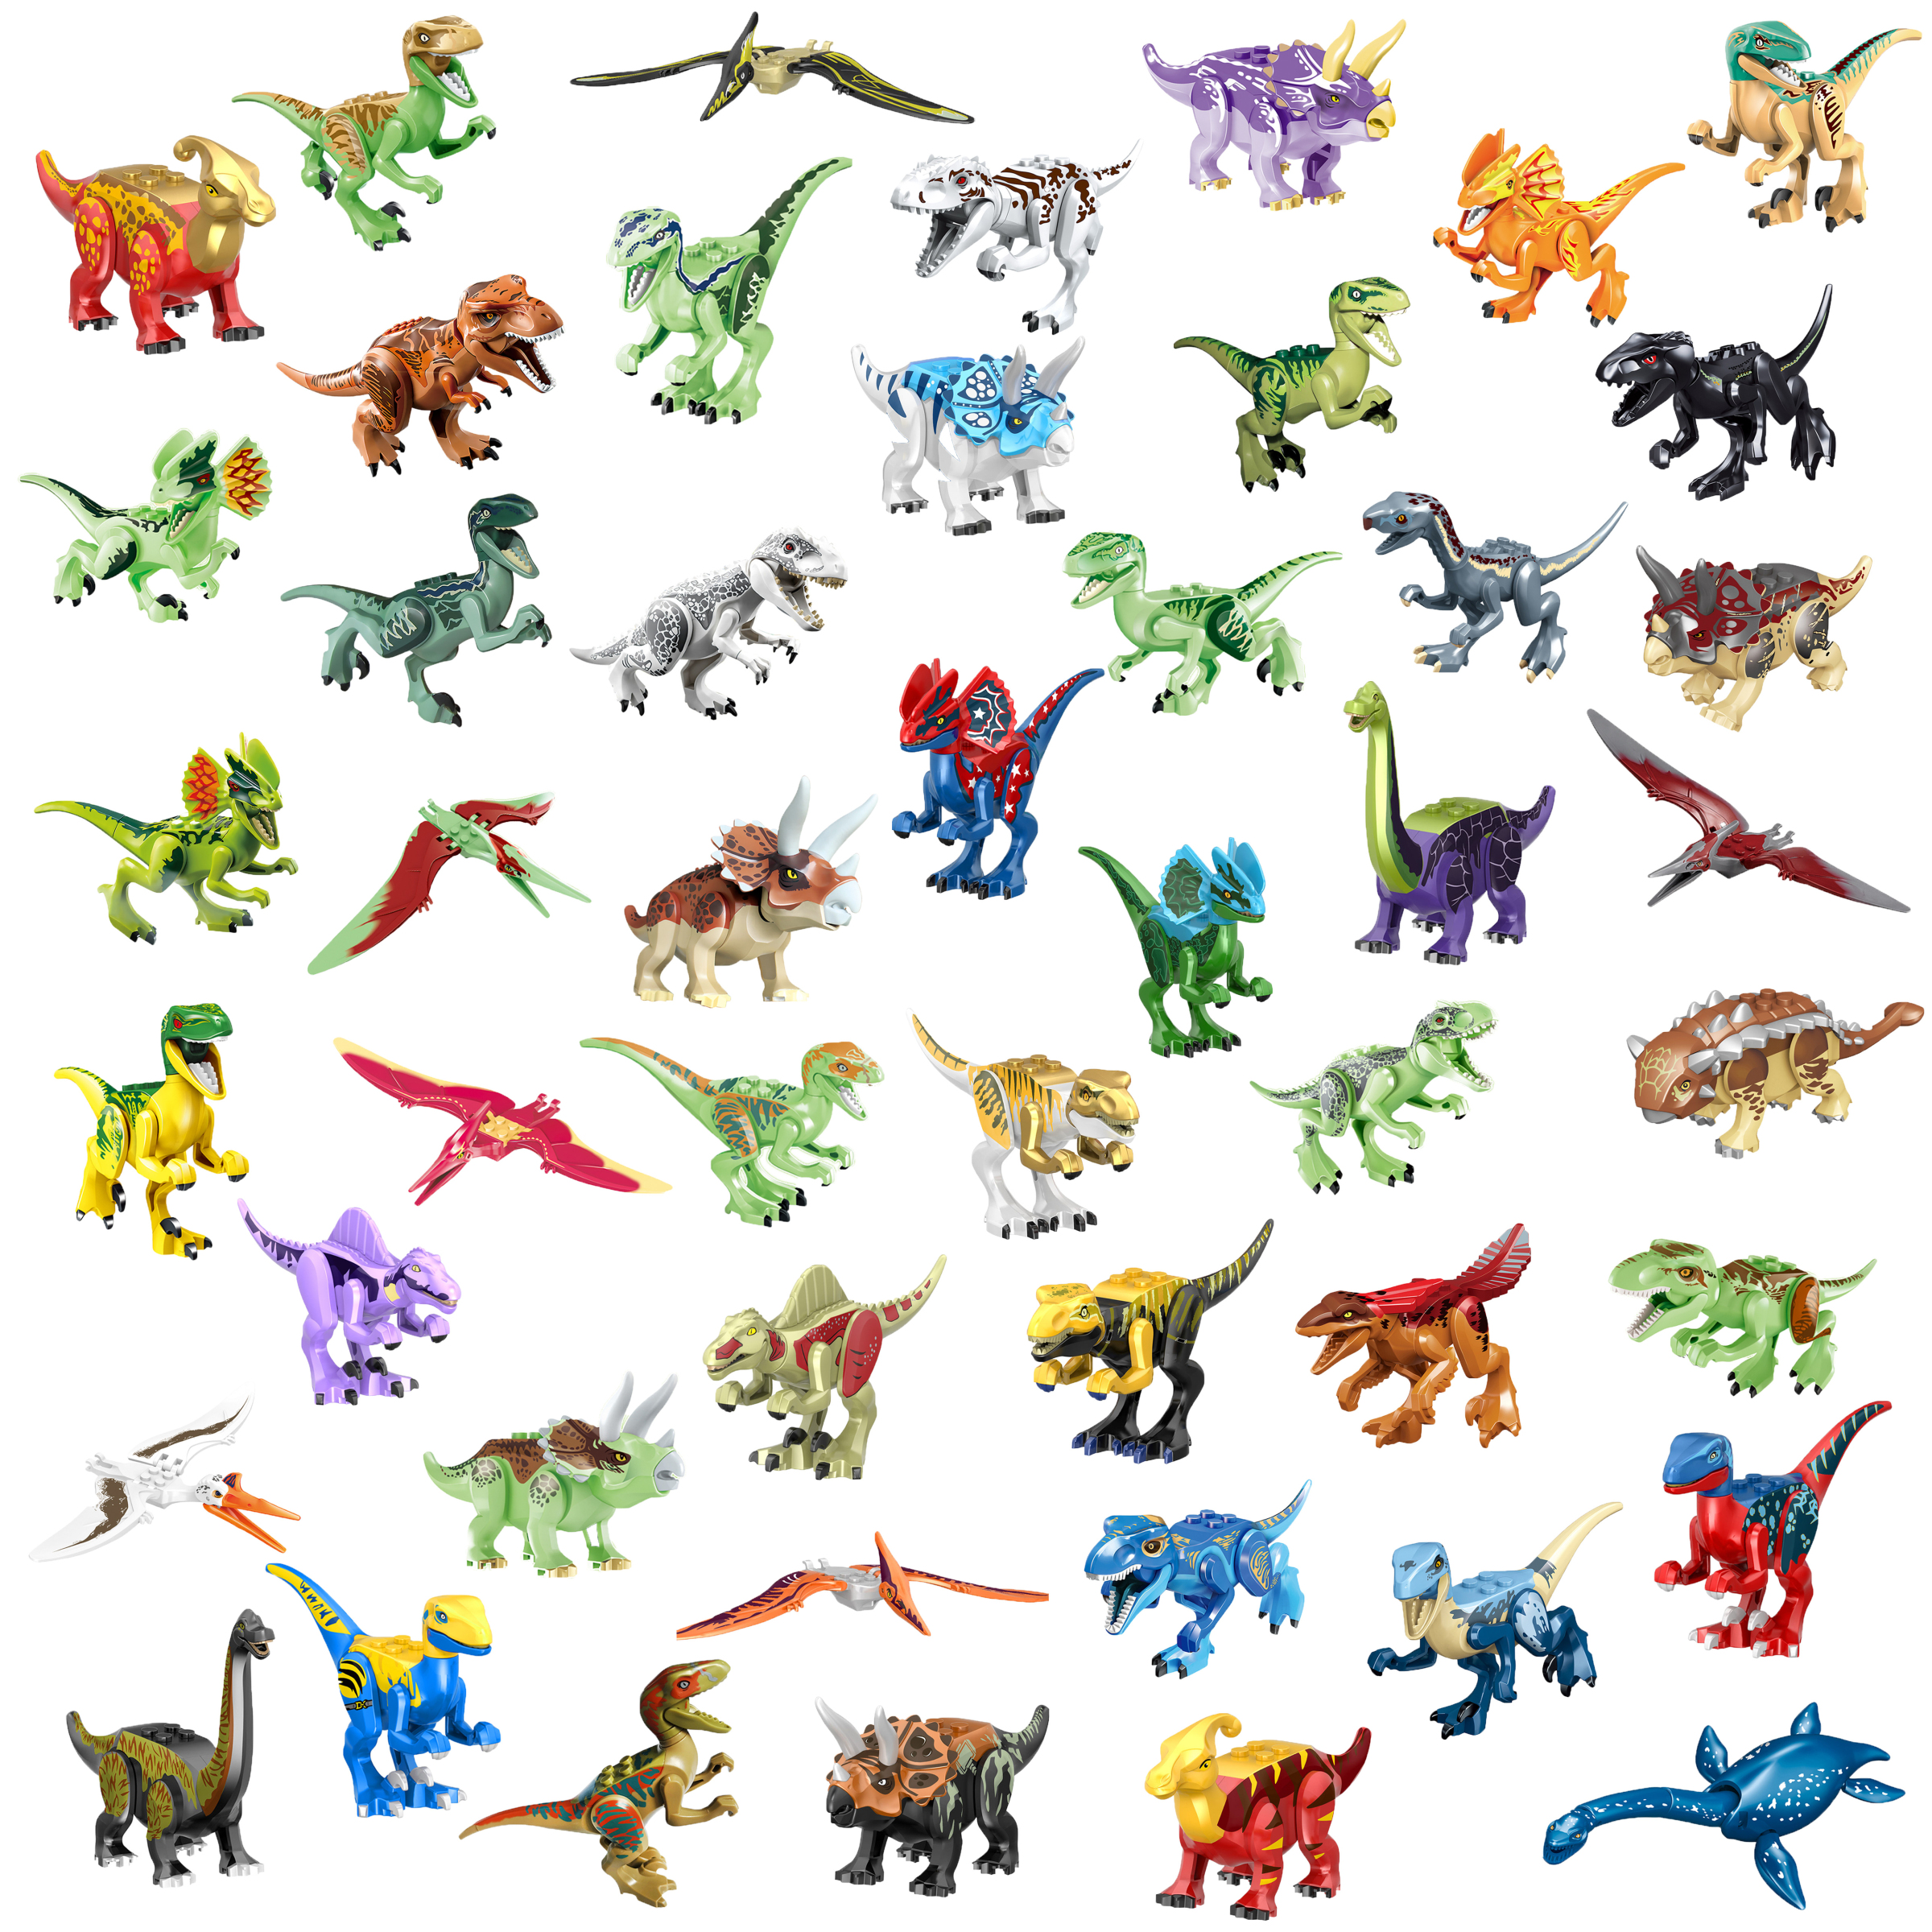 恐龙侏罗纪霸王龙公园三角龙世界腕龙棘龙剑龙翼龙迅猛龙积木玩具